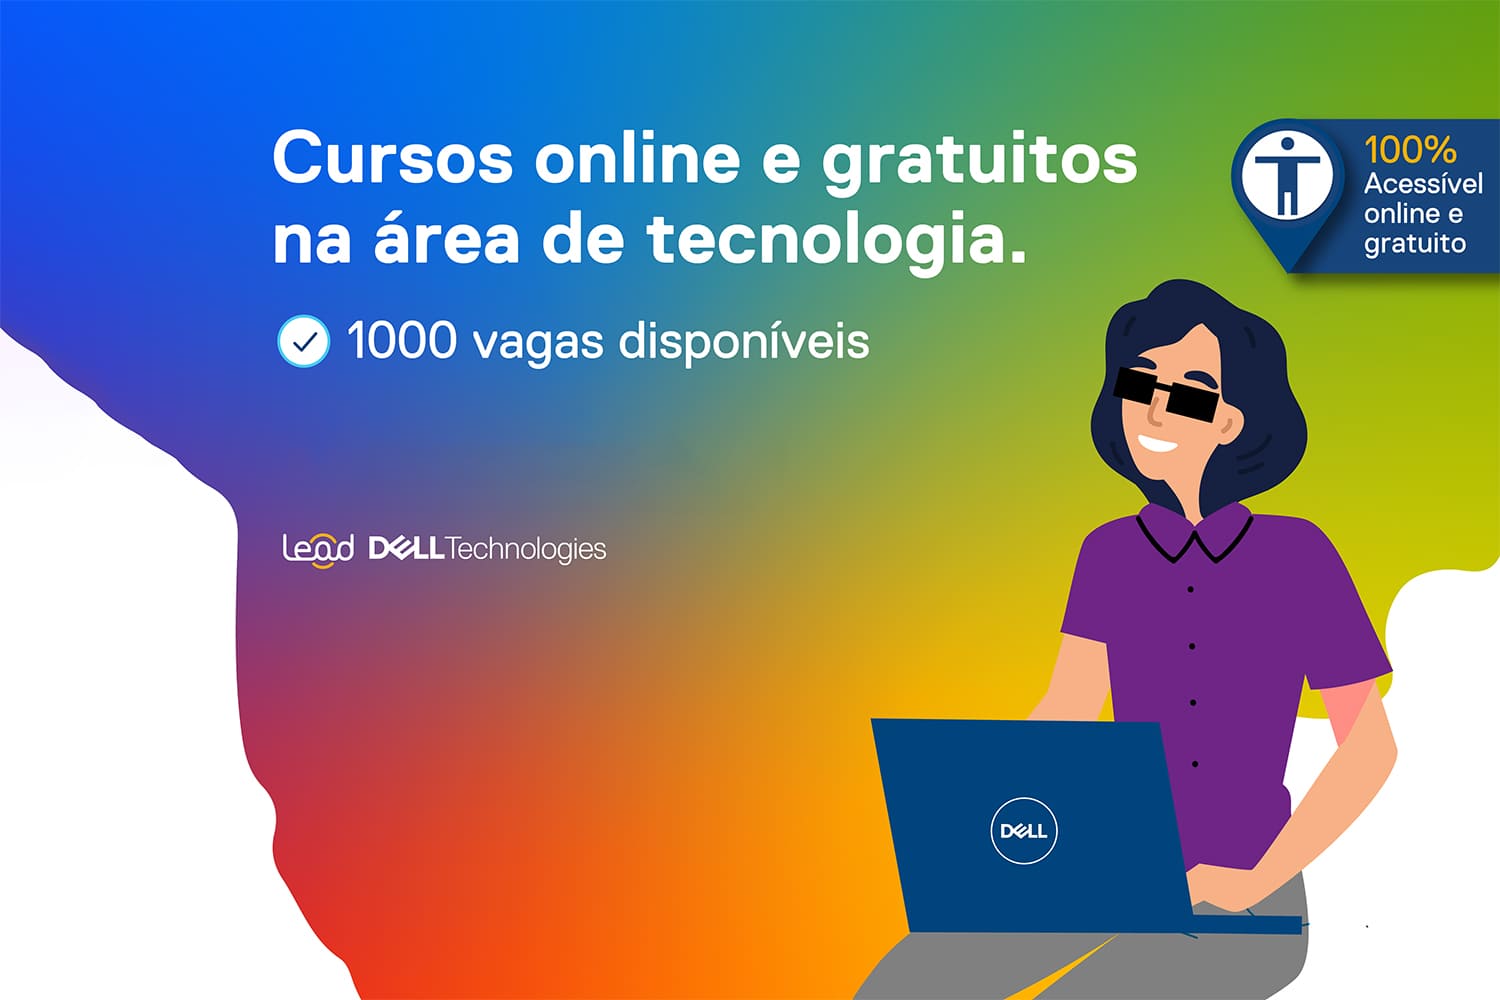 Banner de divulgação com plano de fundo multicolorido, texto e ilustração, descritos na legenda abaixo, ilustrando "Dell oferece mil vagas para 20 cursos".